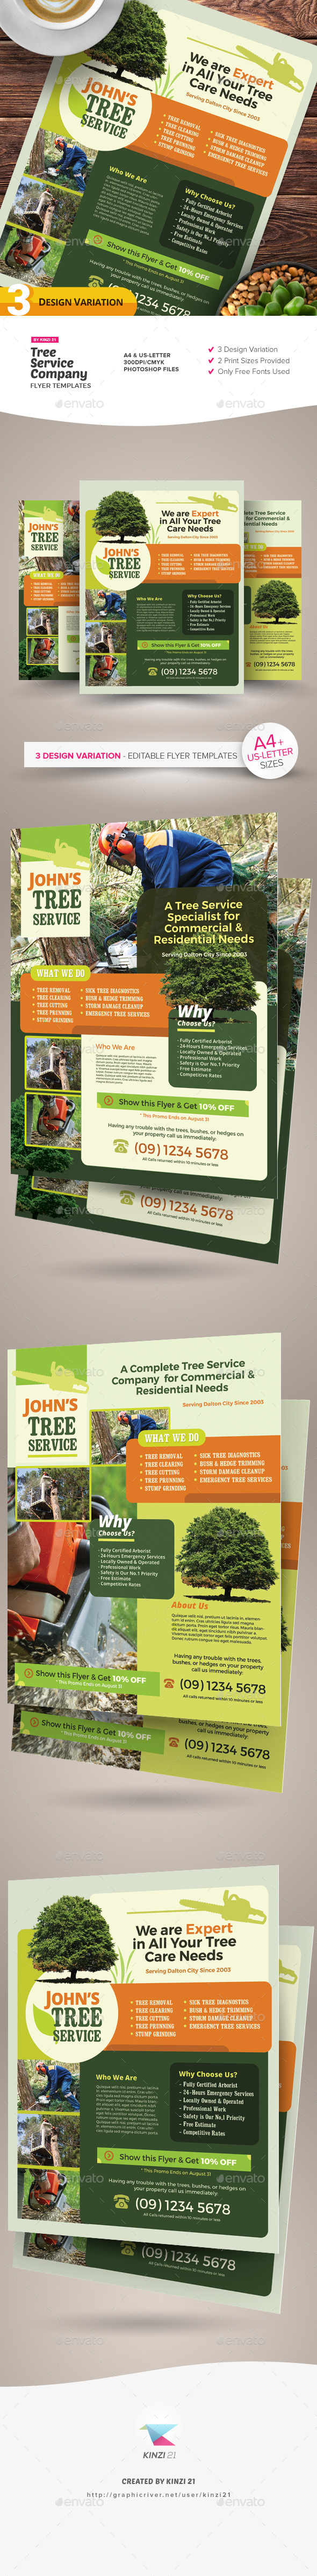 Tree Service Company Flyer Templates